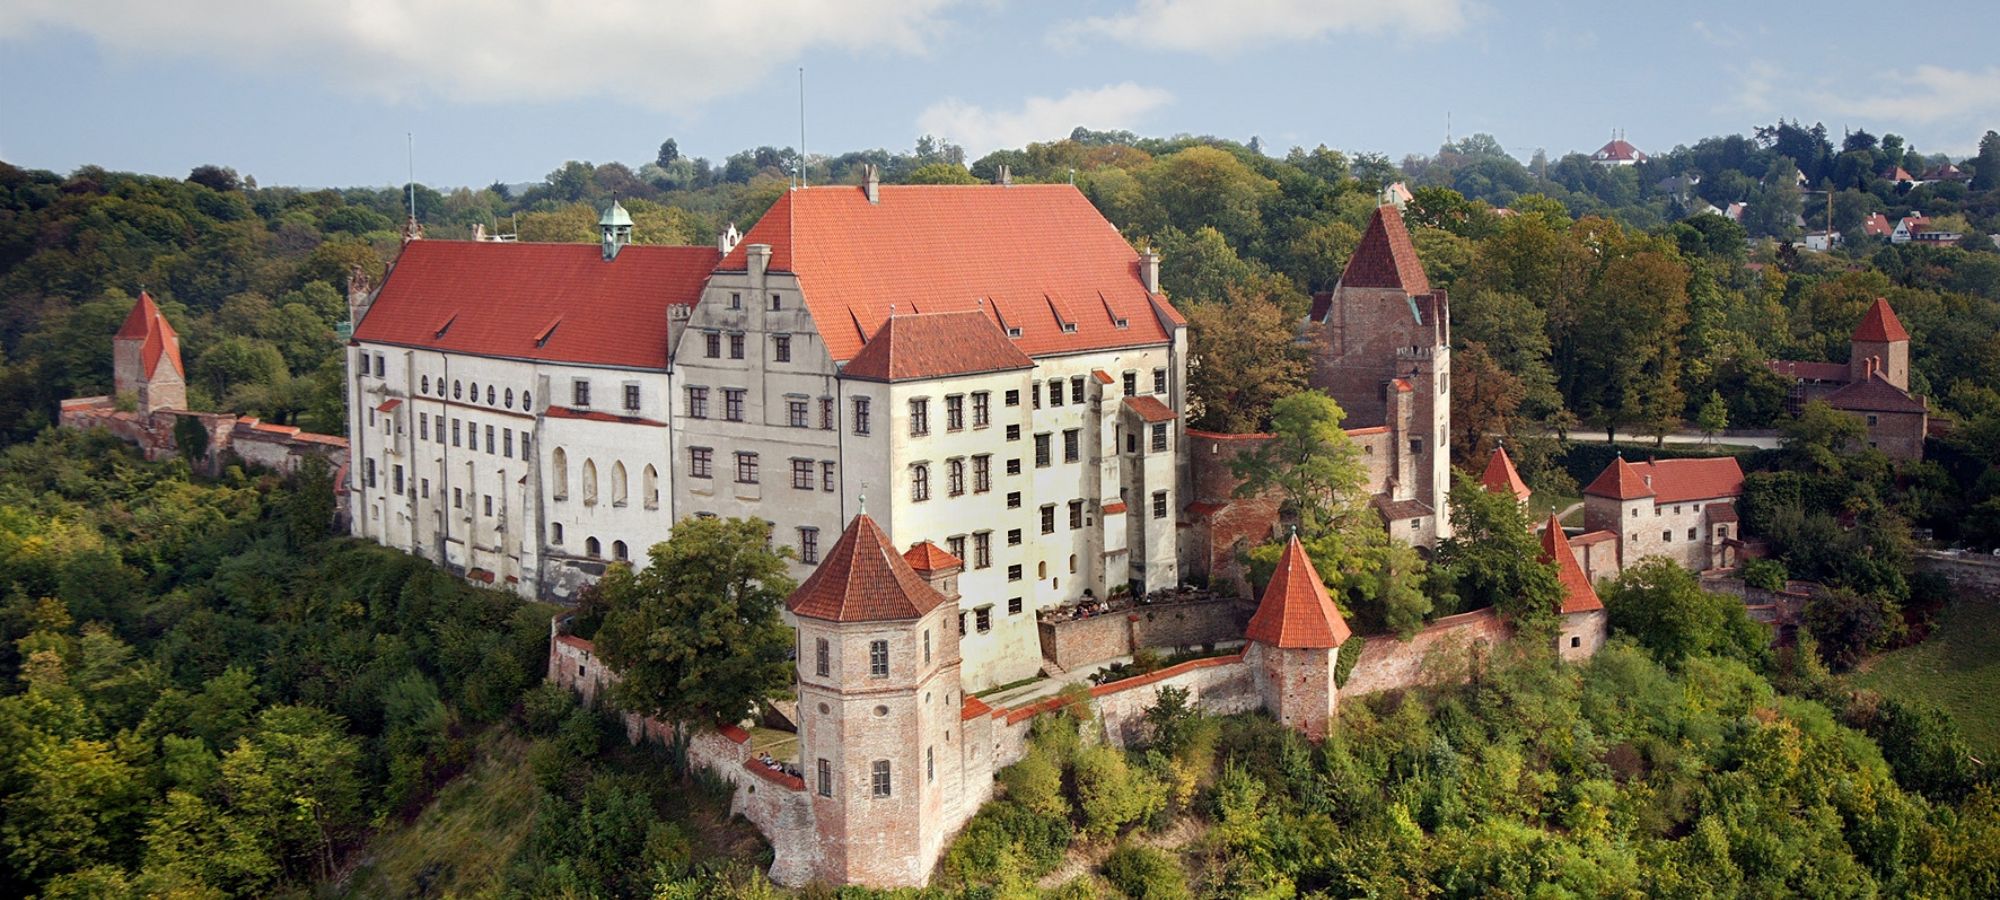 Die Burg Trausnitz in Landshut